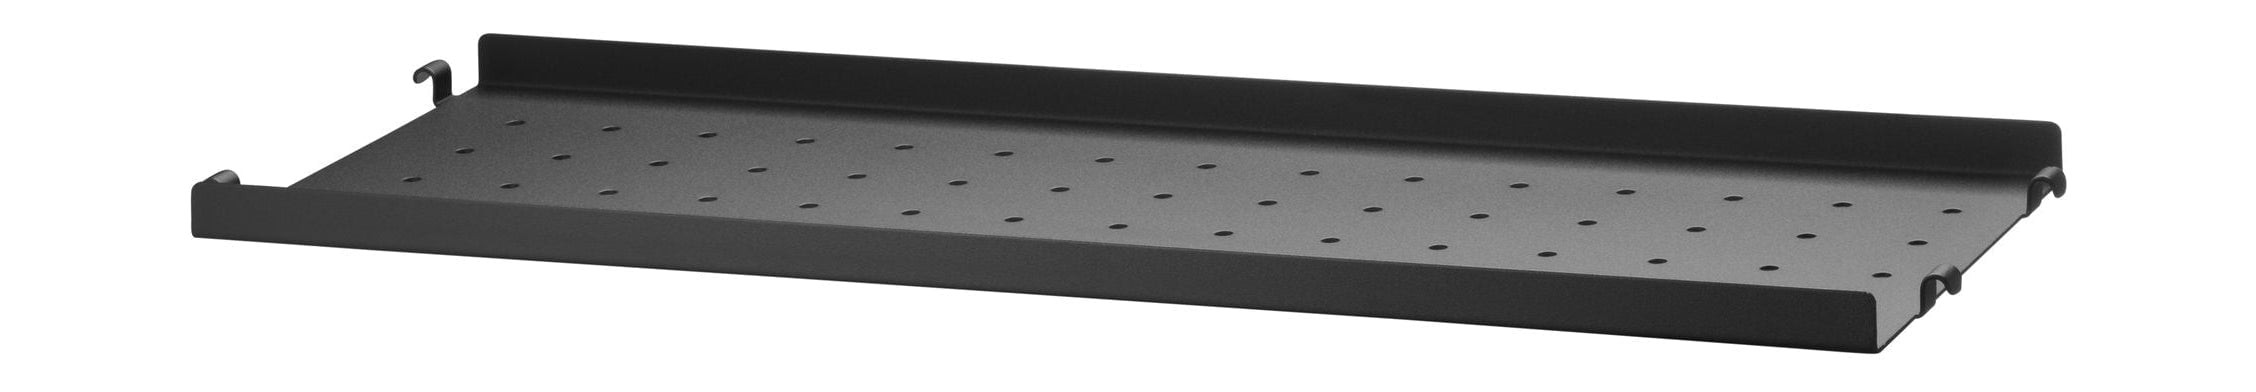 String Furniture Metalen plank van het strijksysteem met lage rand 20x58 cm, zwart